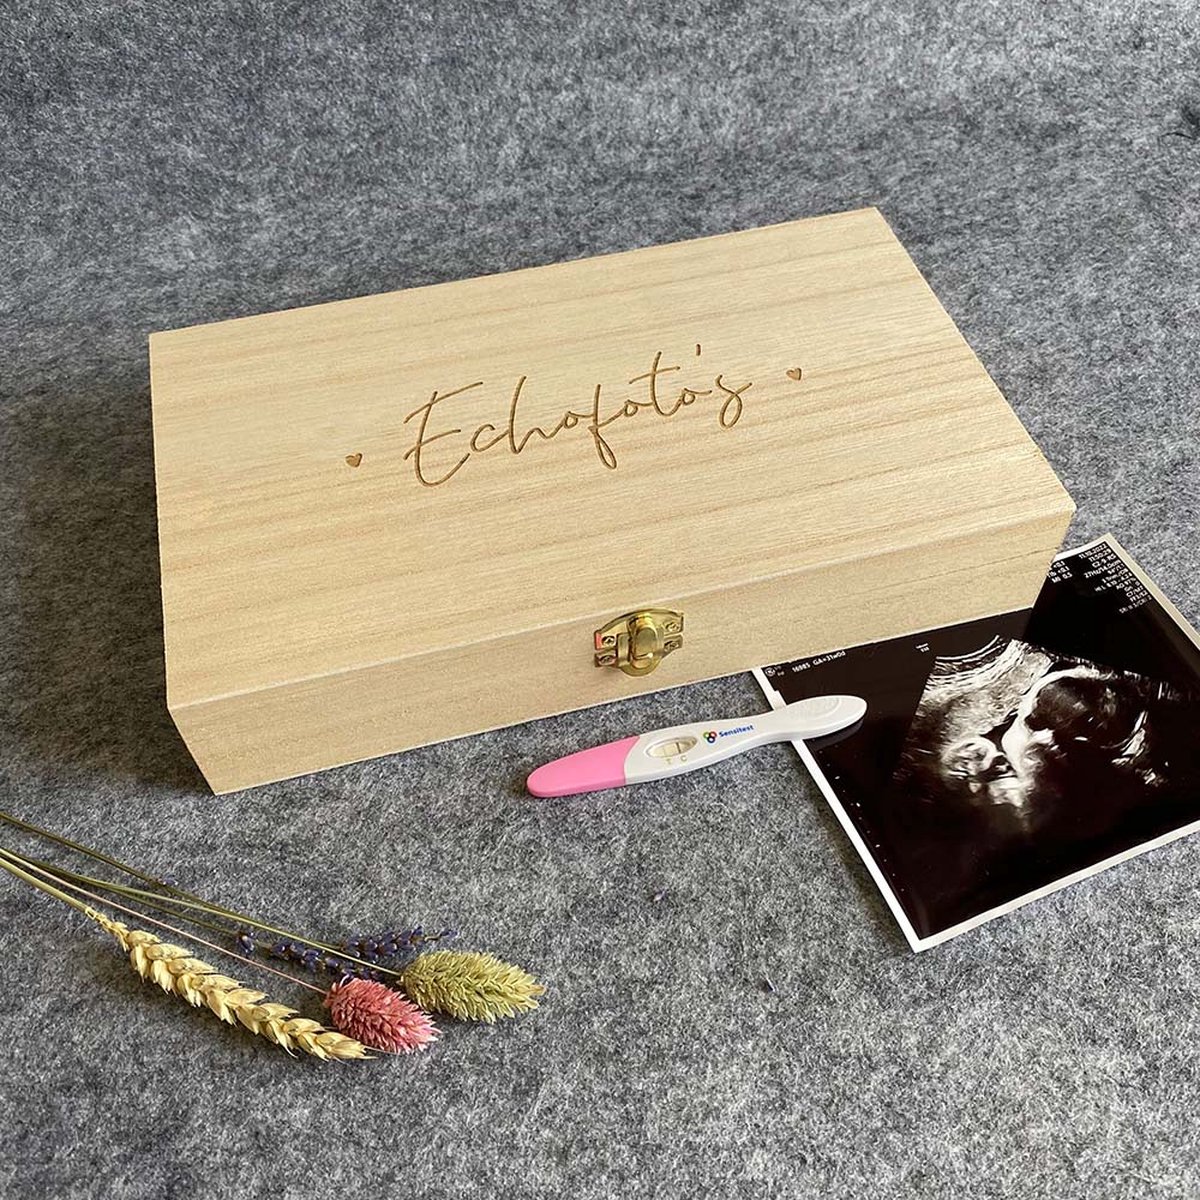 Echo bewaarkistje van hout [groot] - Studio Thoés - bewaardoos echofoto's - zwangerschap